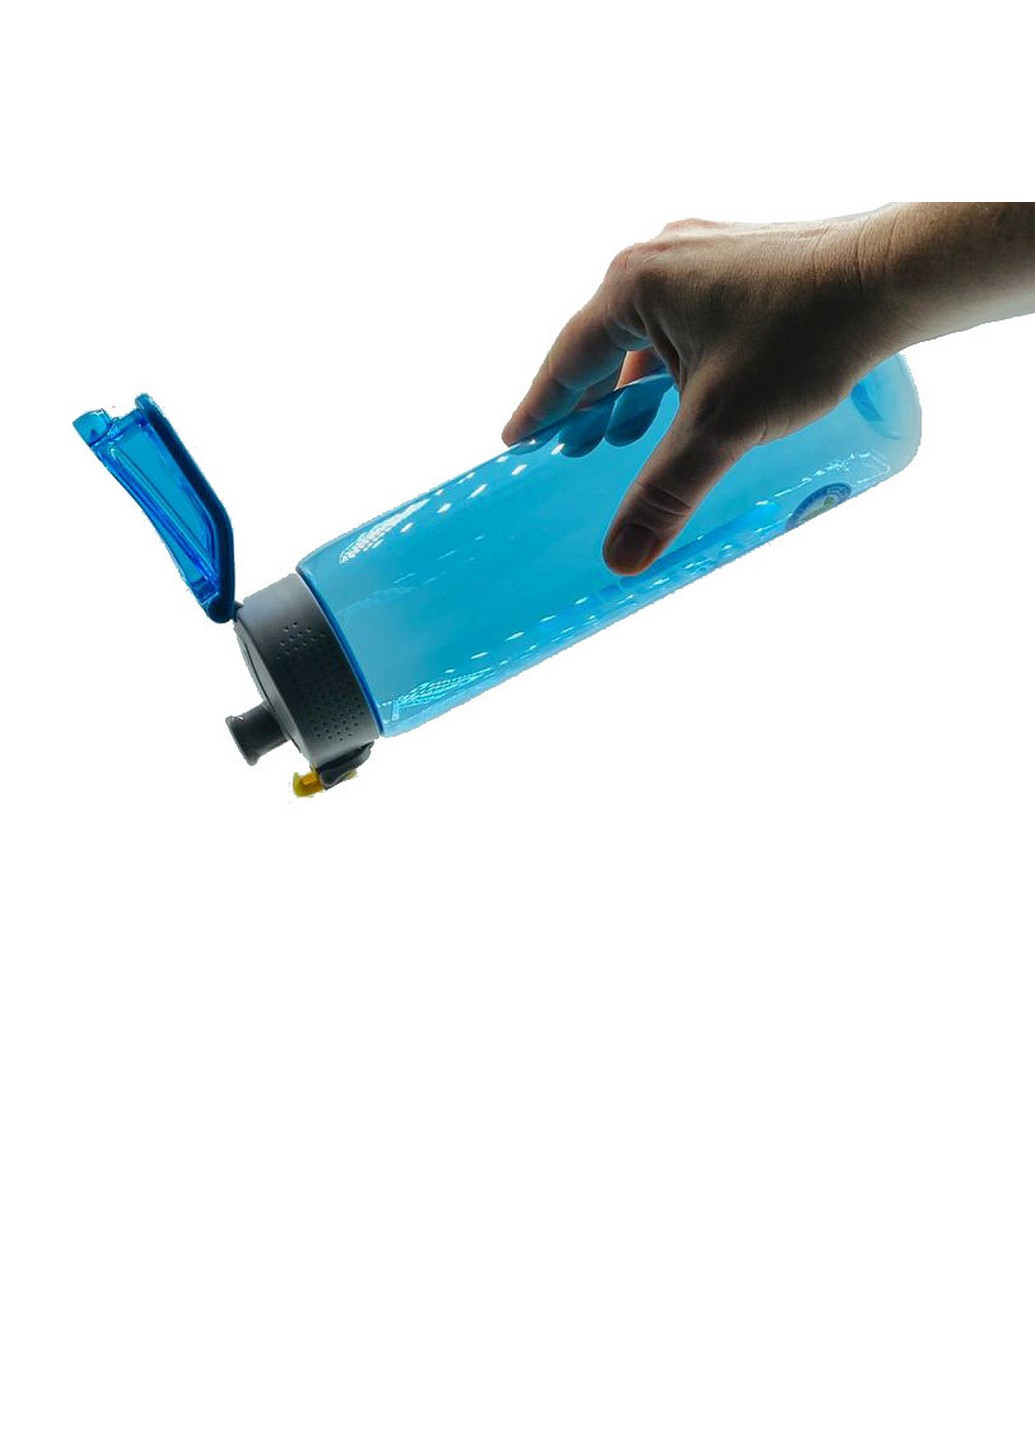 Бутылка для воды спортивная 750 мл Casno (253063818)